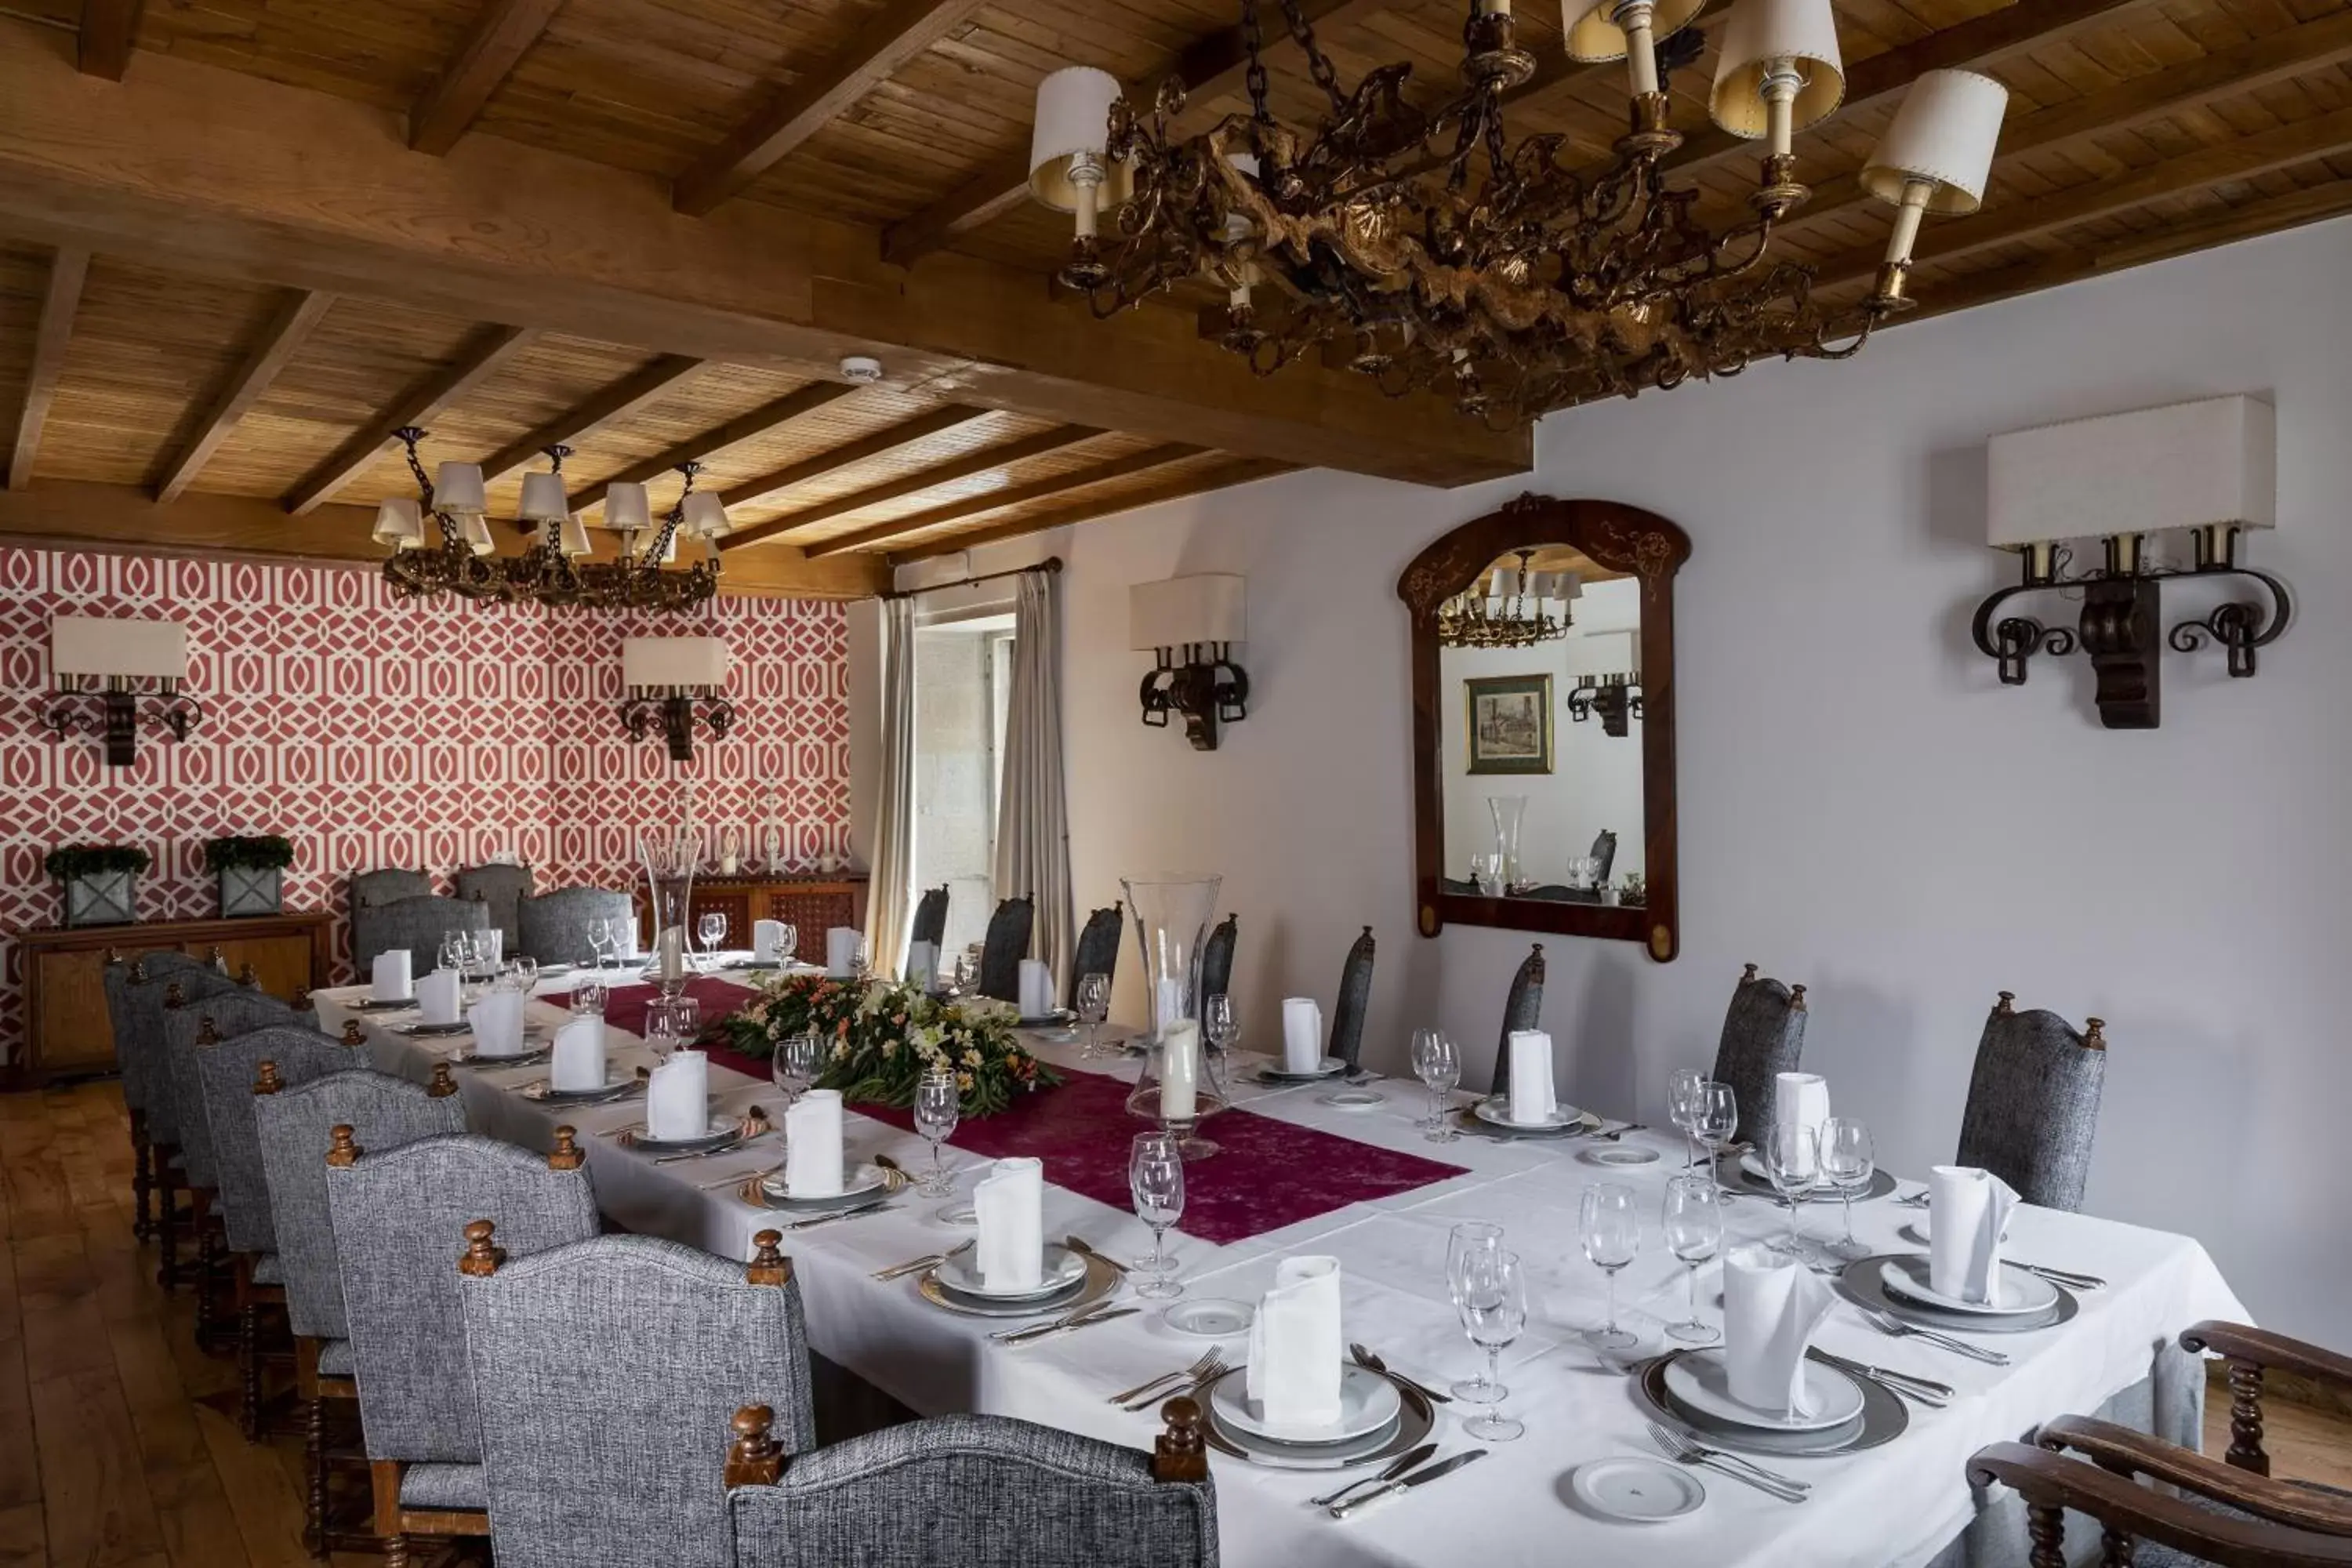 Banquet/Function facilities, Restaurant/Places to Eat in Parador de Pontevedra